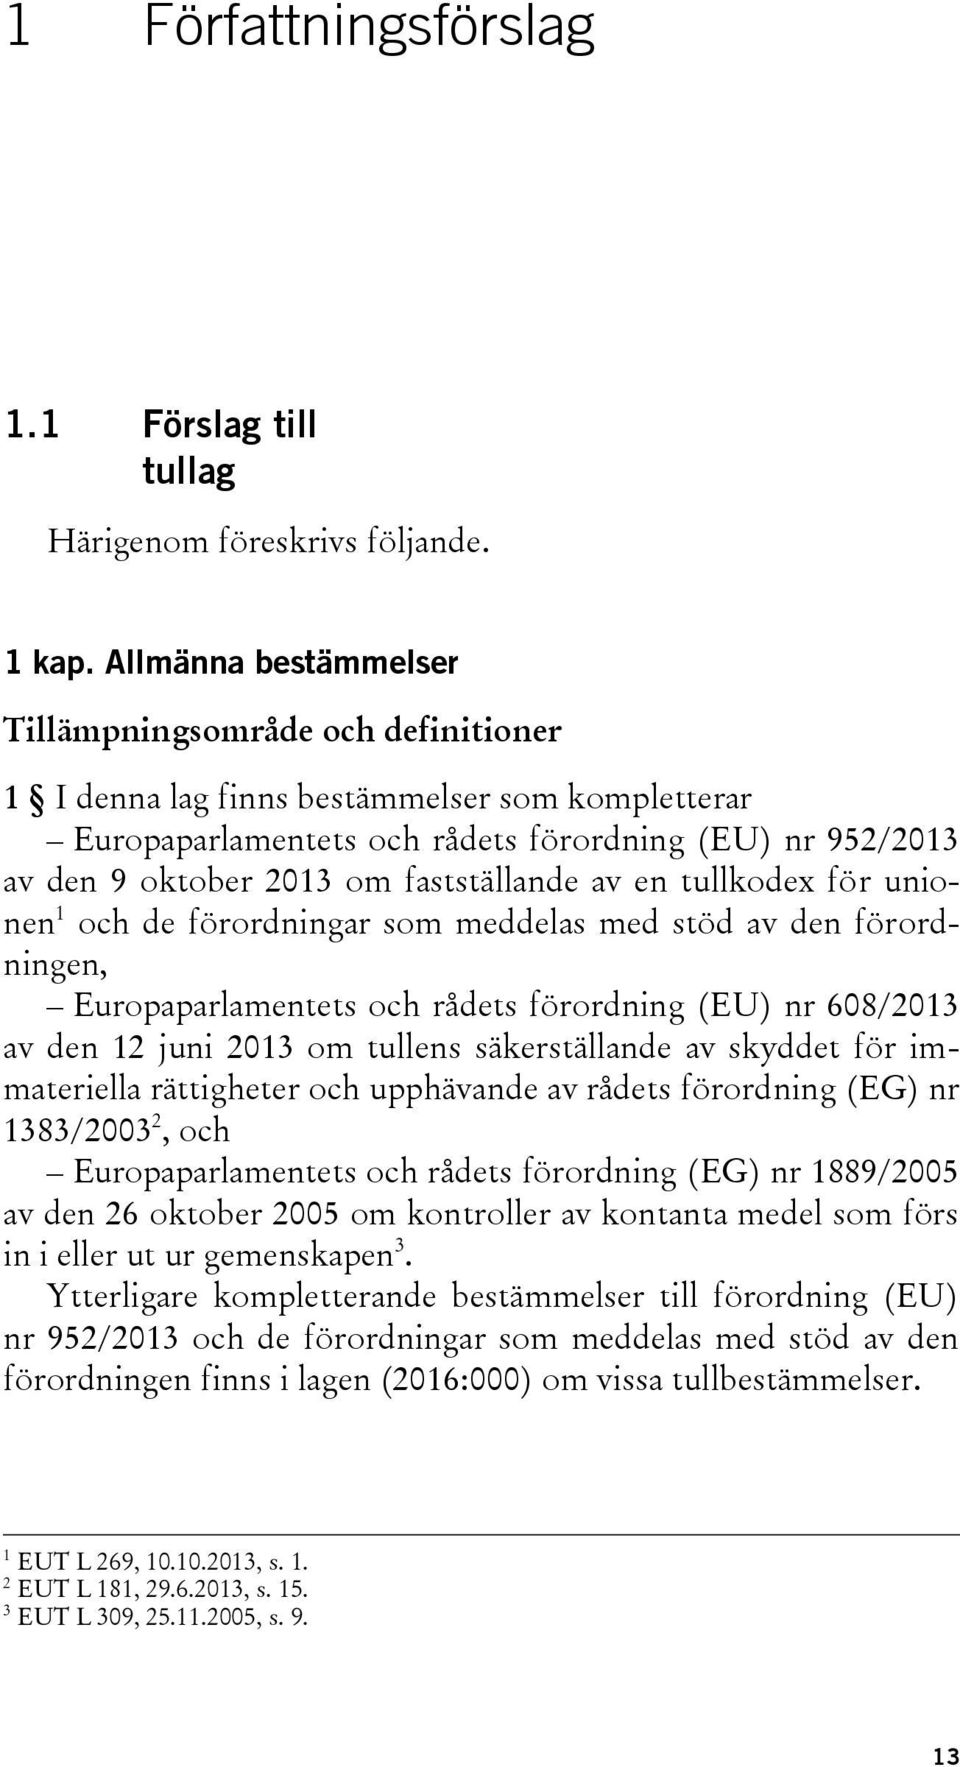 fastställande av en tullkodex för unionen 1 och de förordningar som meddelas med stöd av den förordningen, Europaparlamentets och rådets förordning (EU) nr 608/2013 av den 12 juni 2013 om tullens